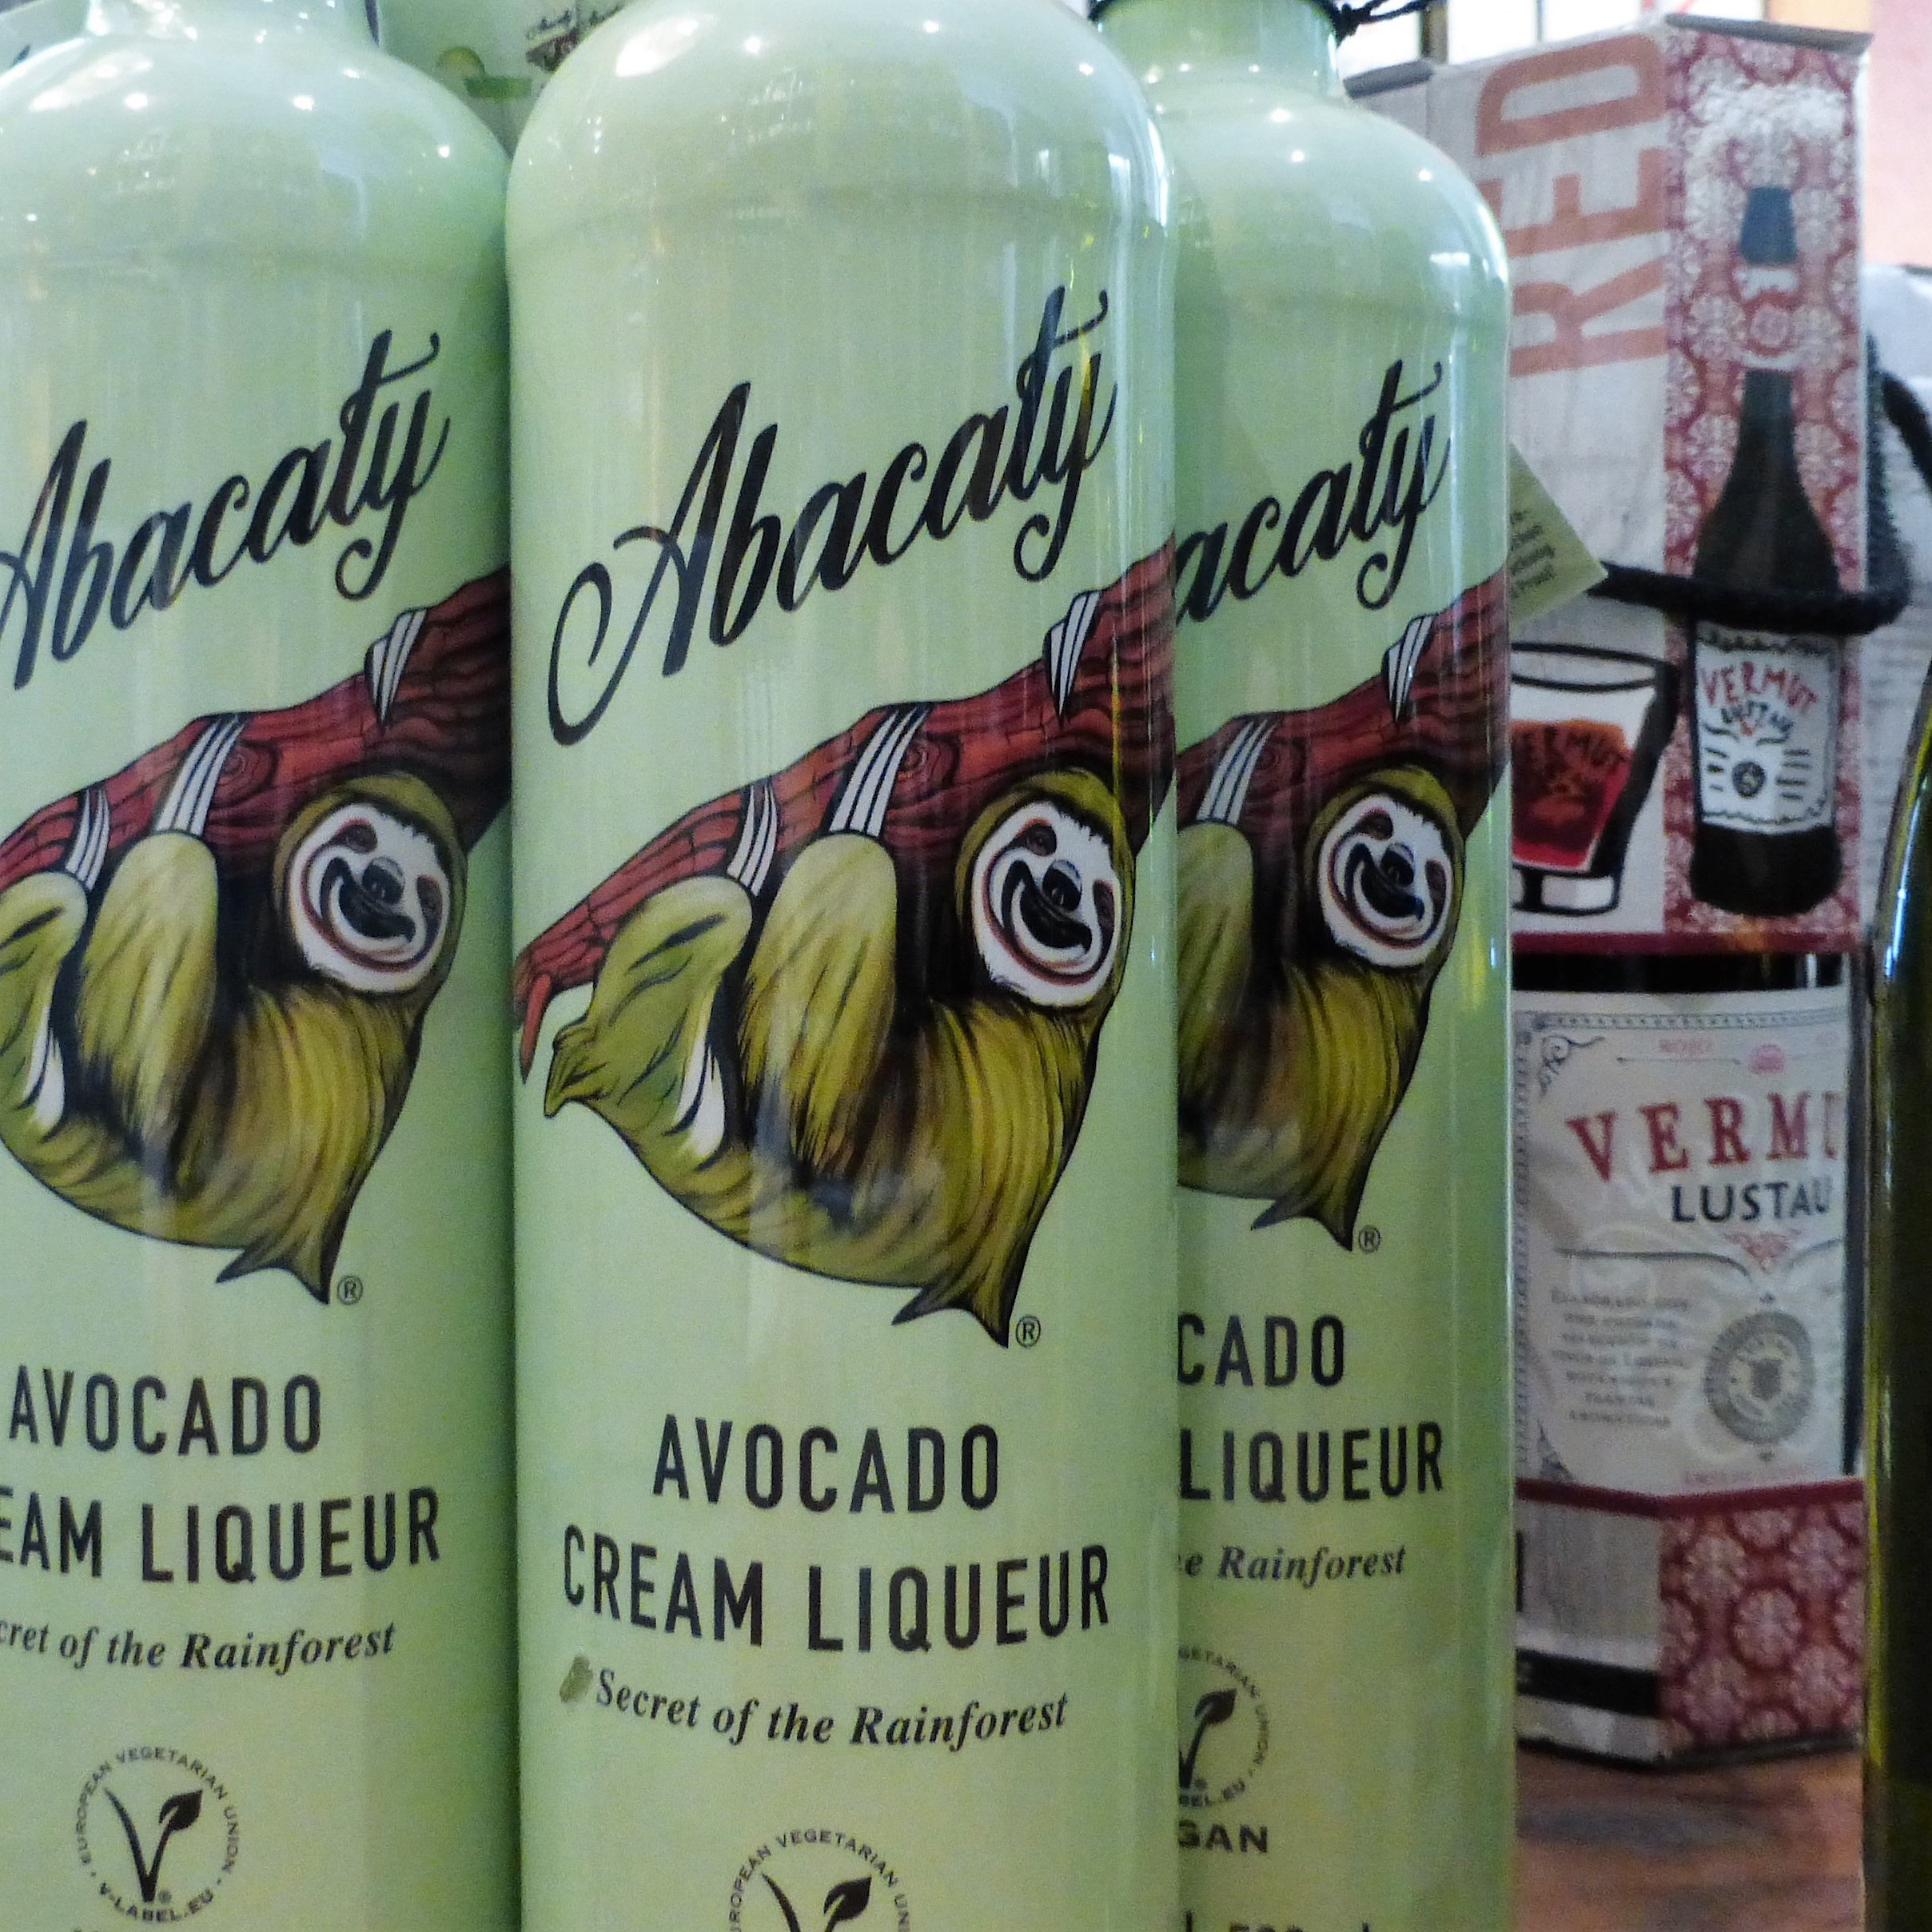 Abacaty, Avocado Cream Liqueur